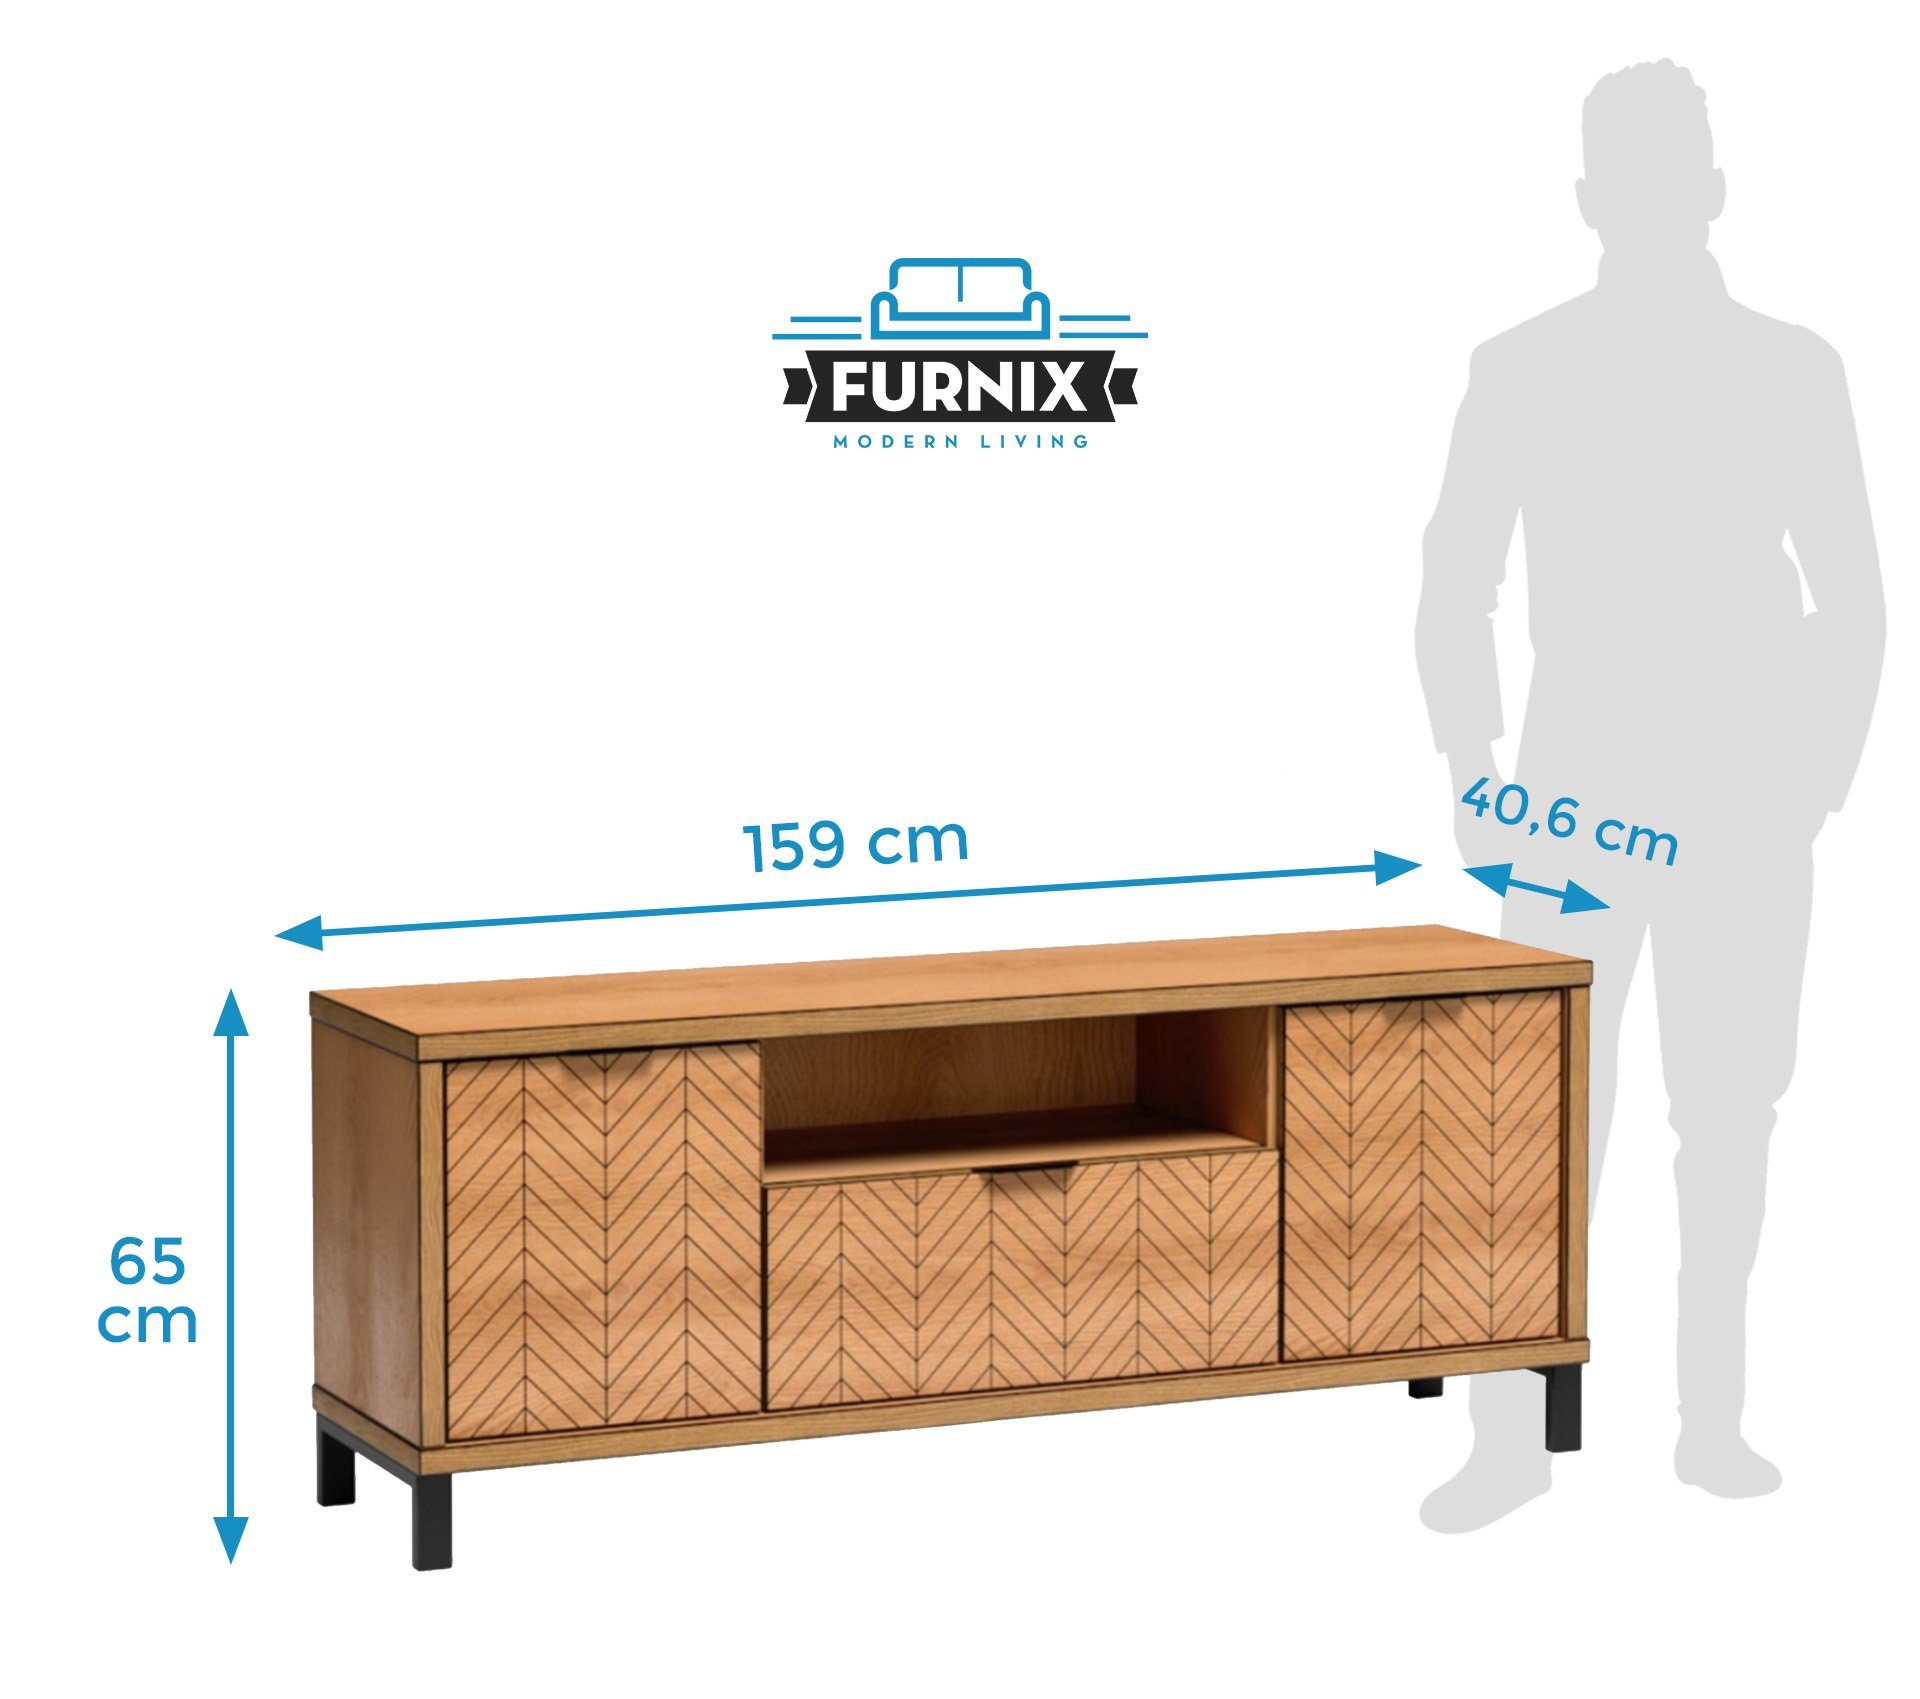 Furnix TV-Schrank FELLIO B117,5 und cm, Design T40,6 interessantes Karamelleiche Metallfüße Schublade H65 Tür x F-7 x